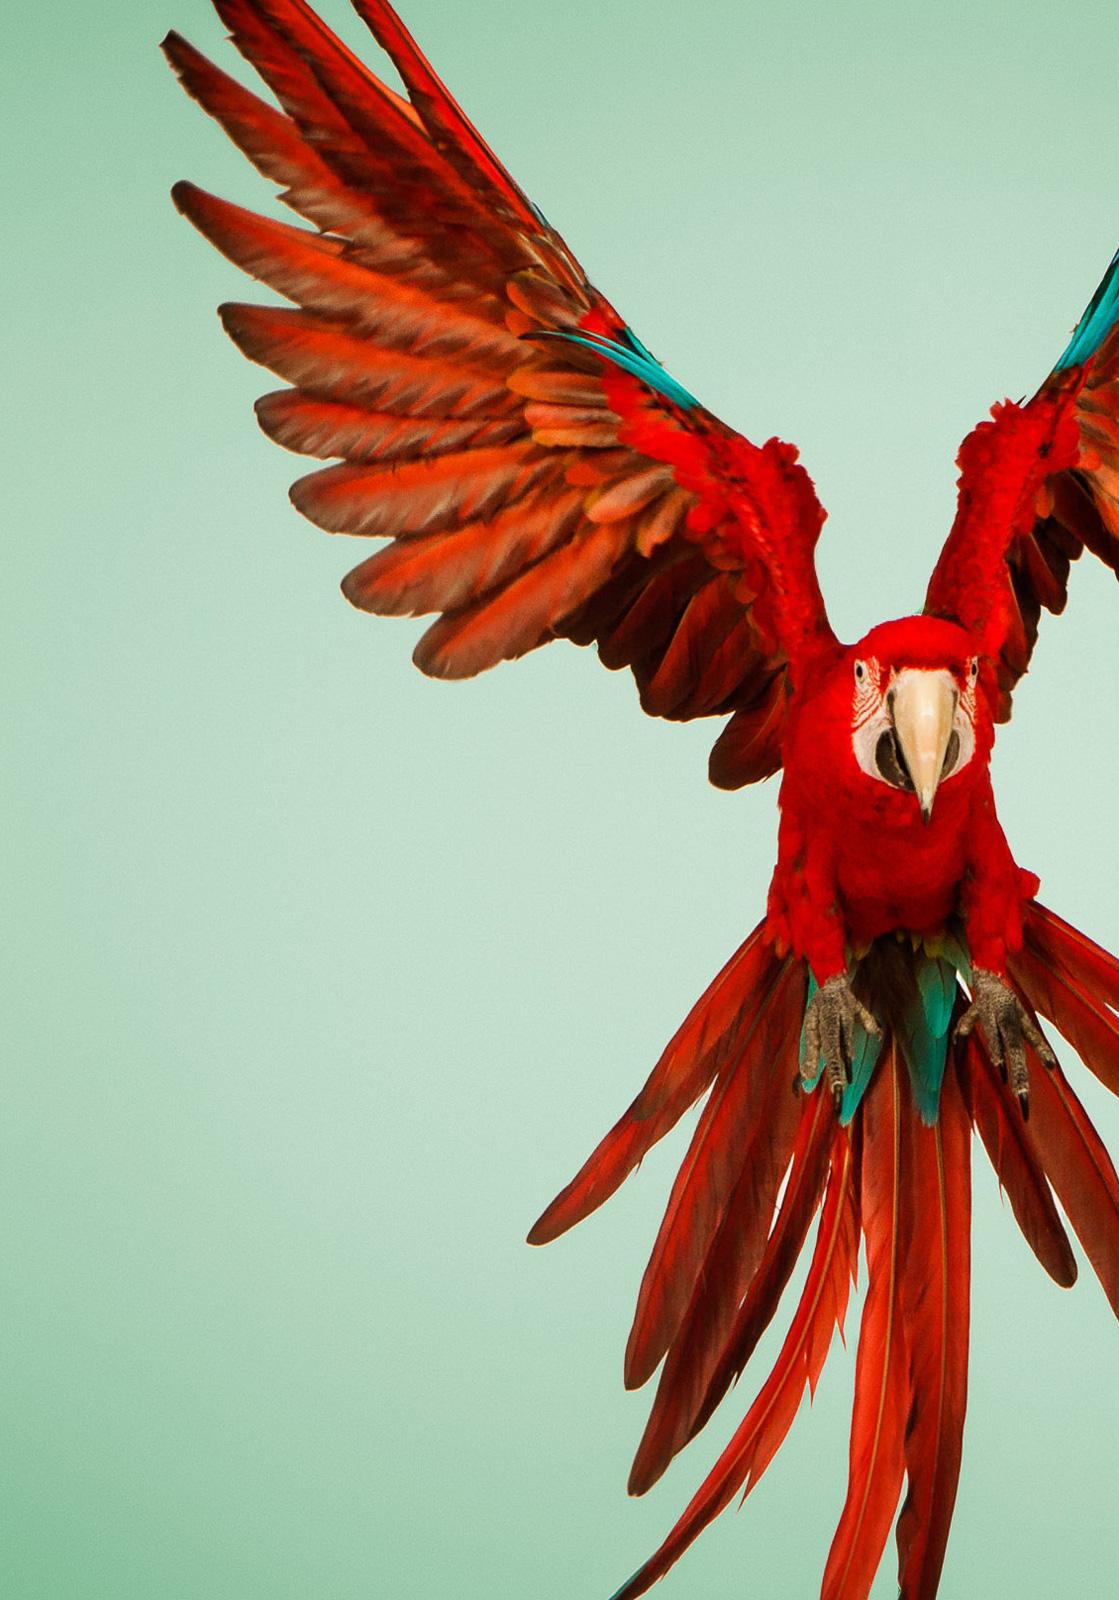  Macaw #6 - Impression oiseau d'art contemporain en édition limitée signée, vert - Contemporain Photograph par Tim Platt